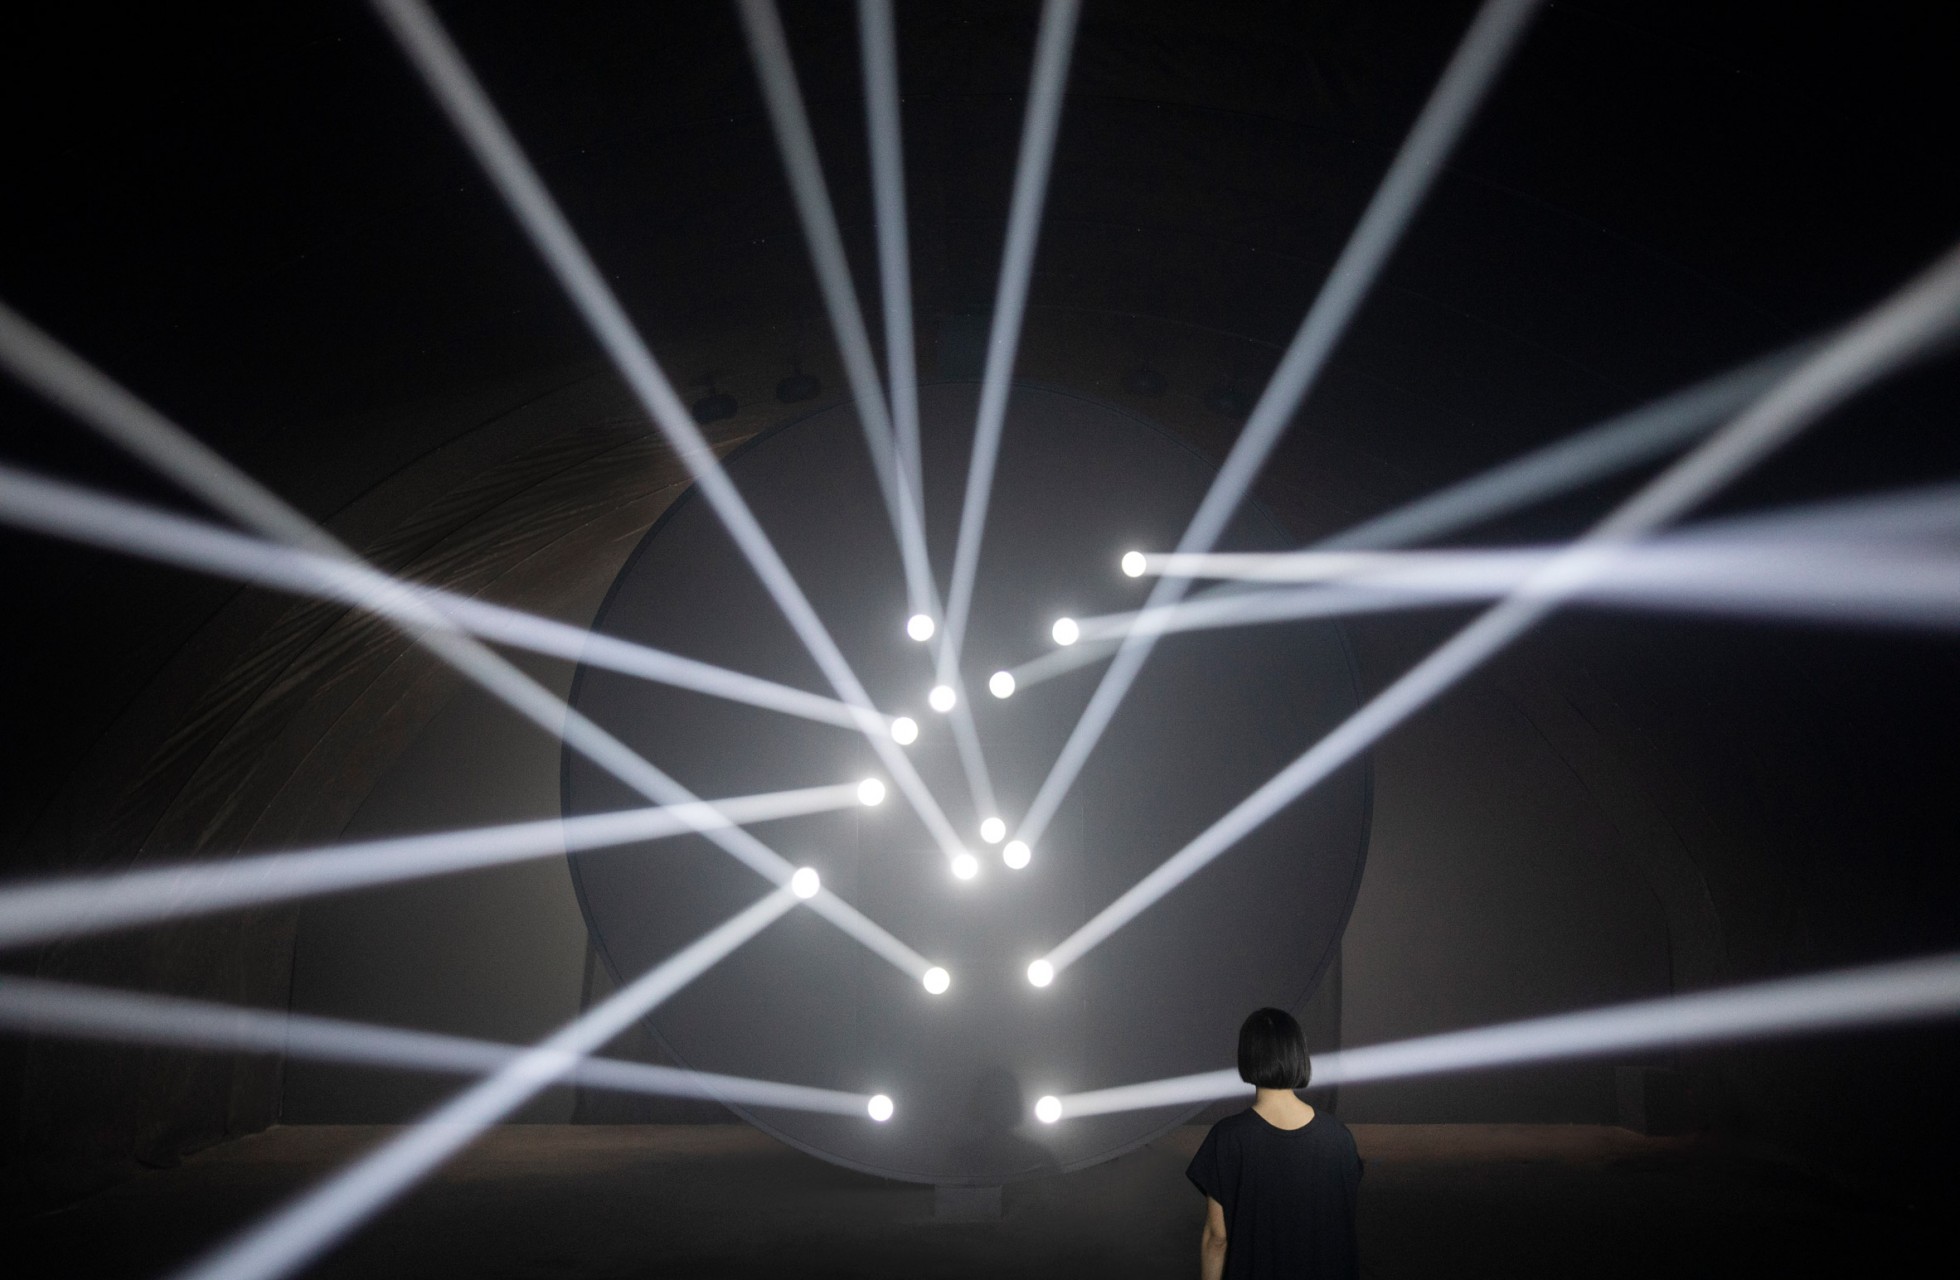 thegreeneyl licht light installation bodies in motion design week milan light points that interpret human motion